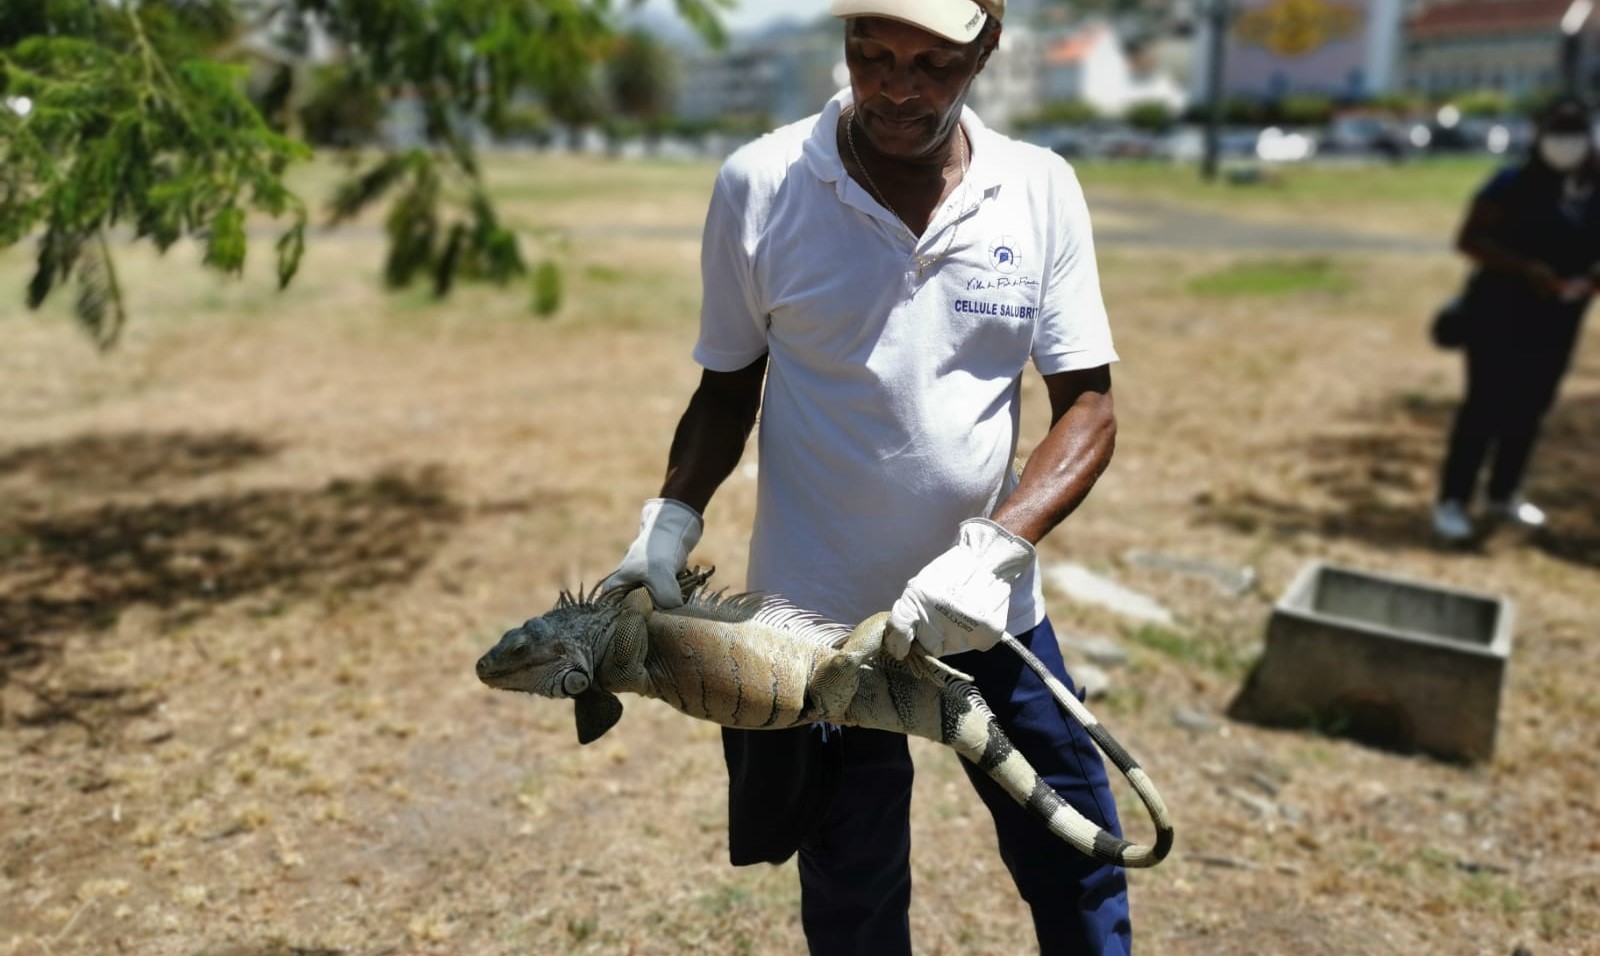     Le Carbet des Sciences organise une exposition sur les iguanes de la Martinique

